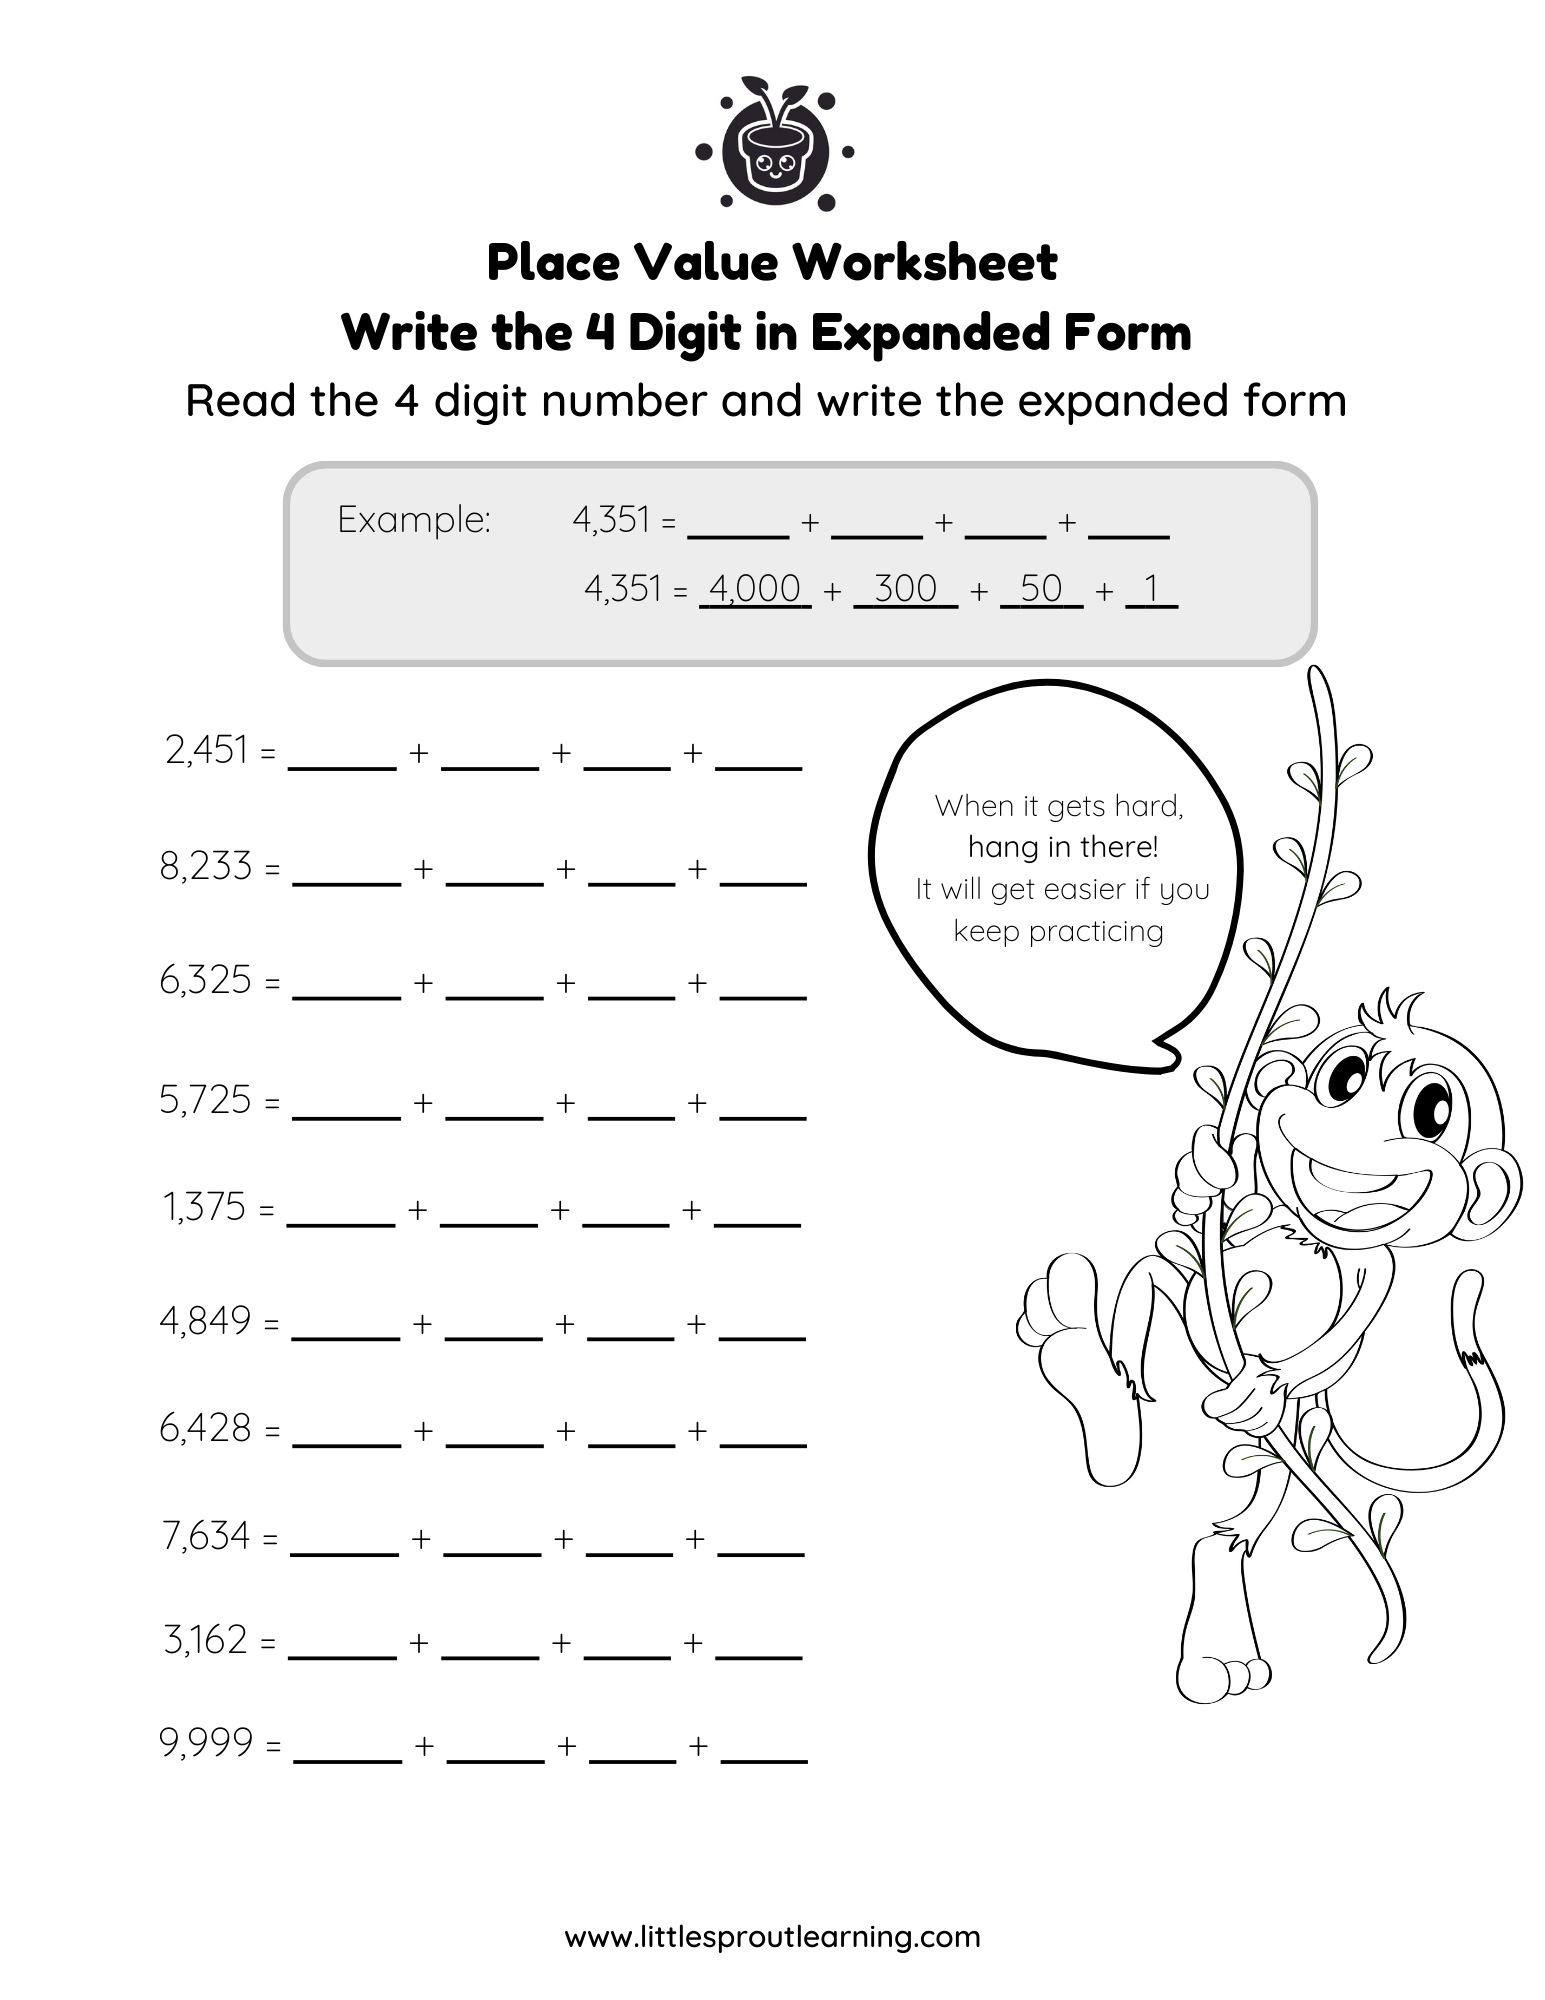 Expanded Form Place Value Worksheet